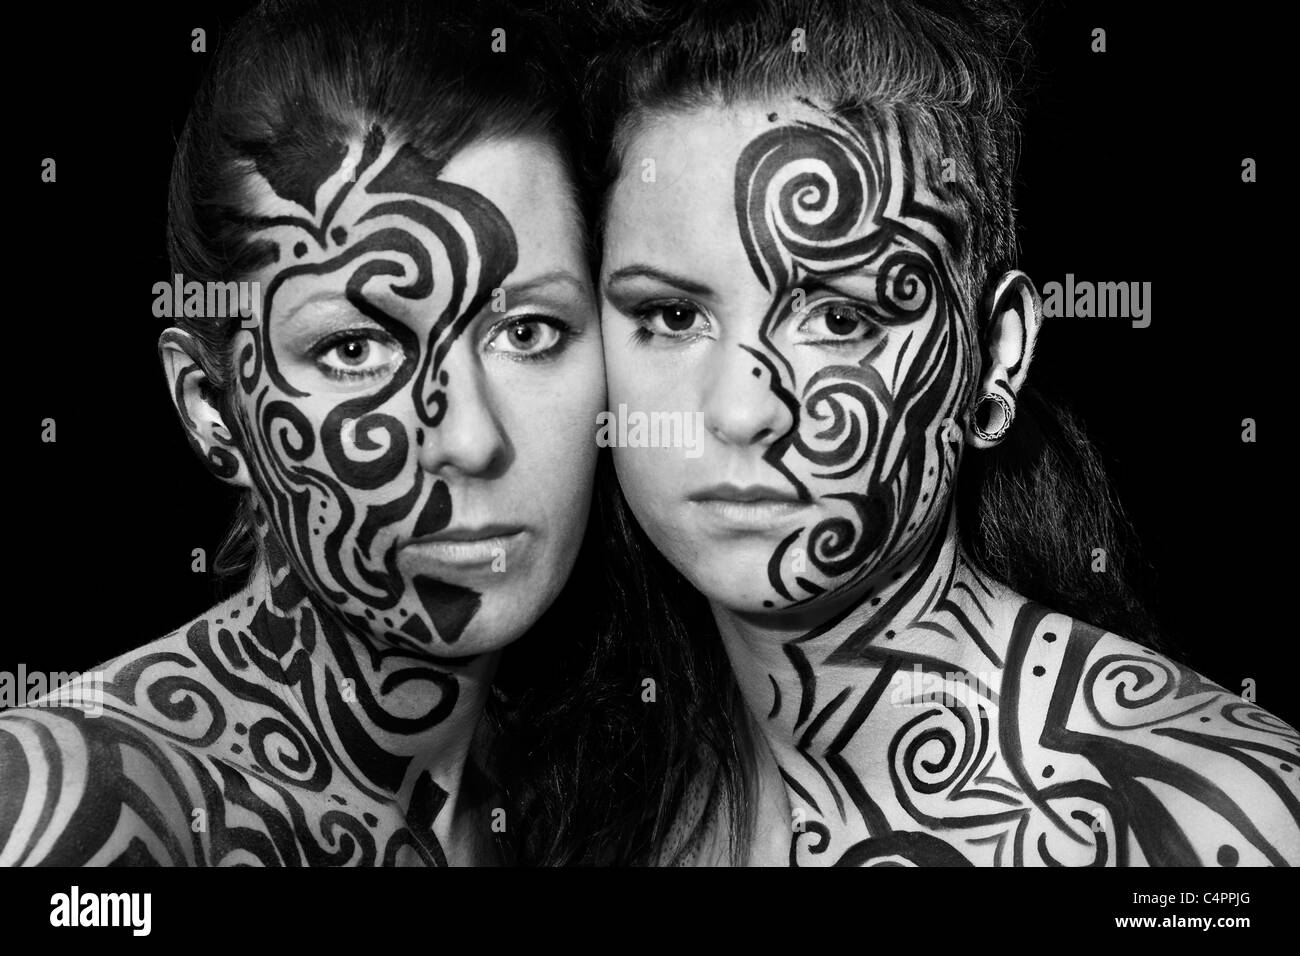 Tribal style make up sui calciatori femmina faces.immagine in bianco e nero.Il formato orizzontale. Foto Stock